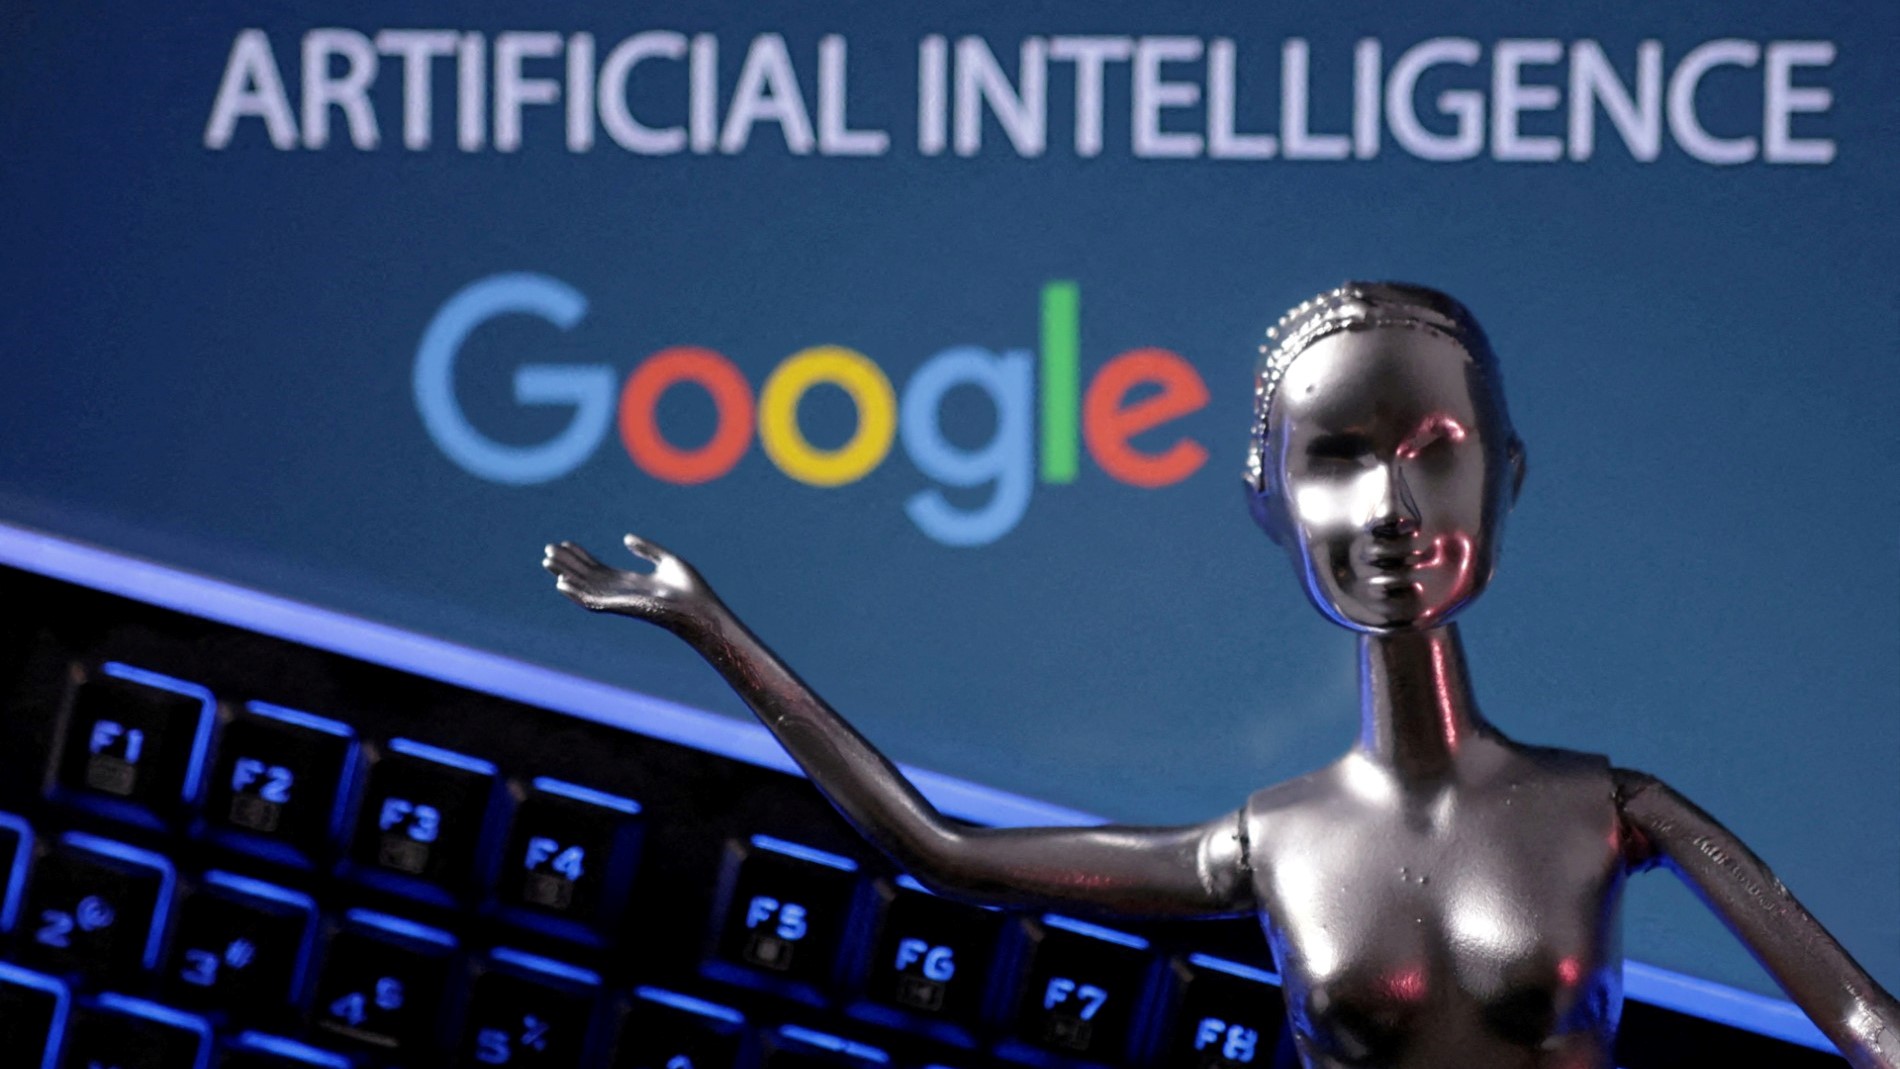 Google: Bientôt une génération nouvelle de publicités basée sur l’IA